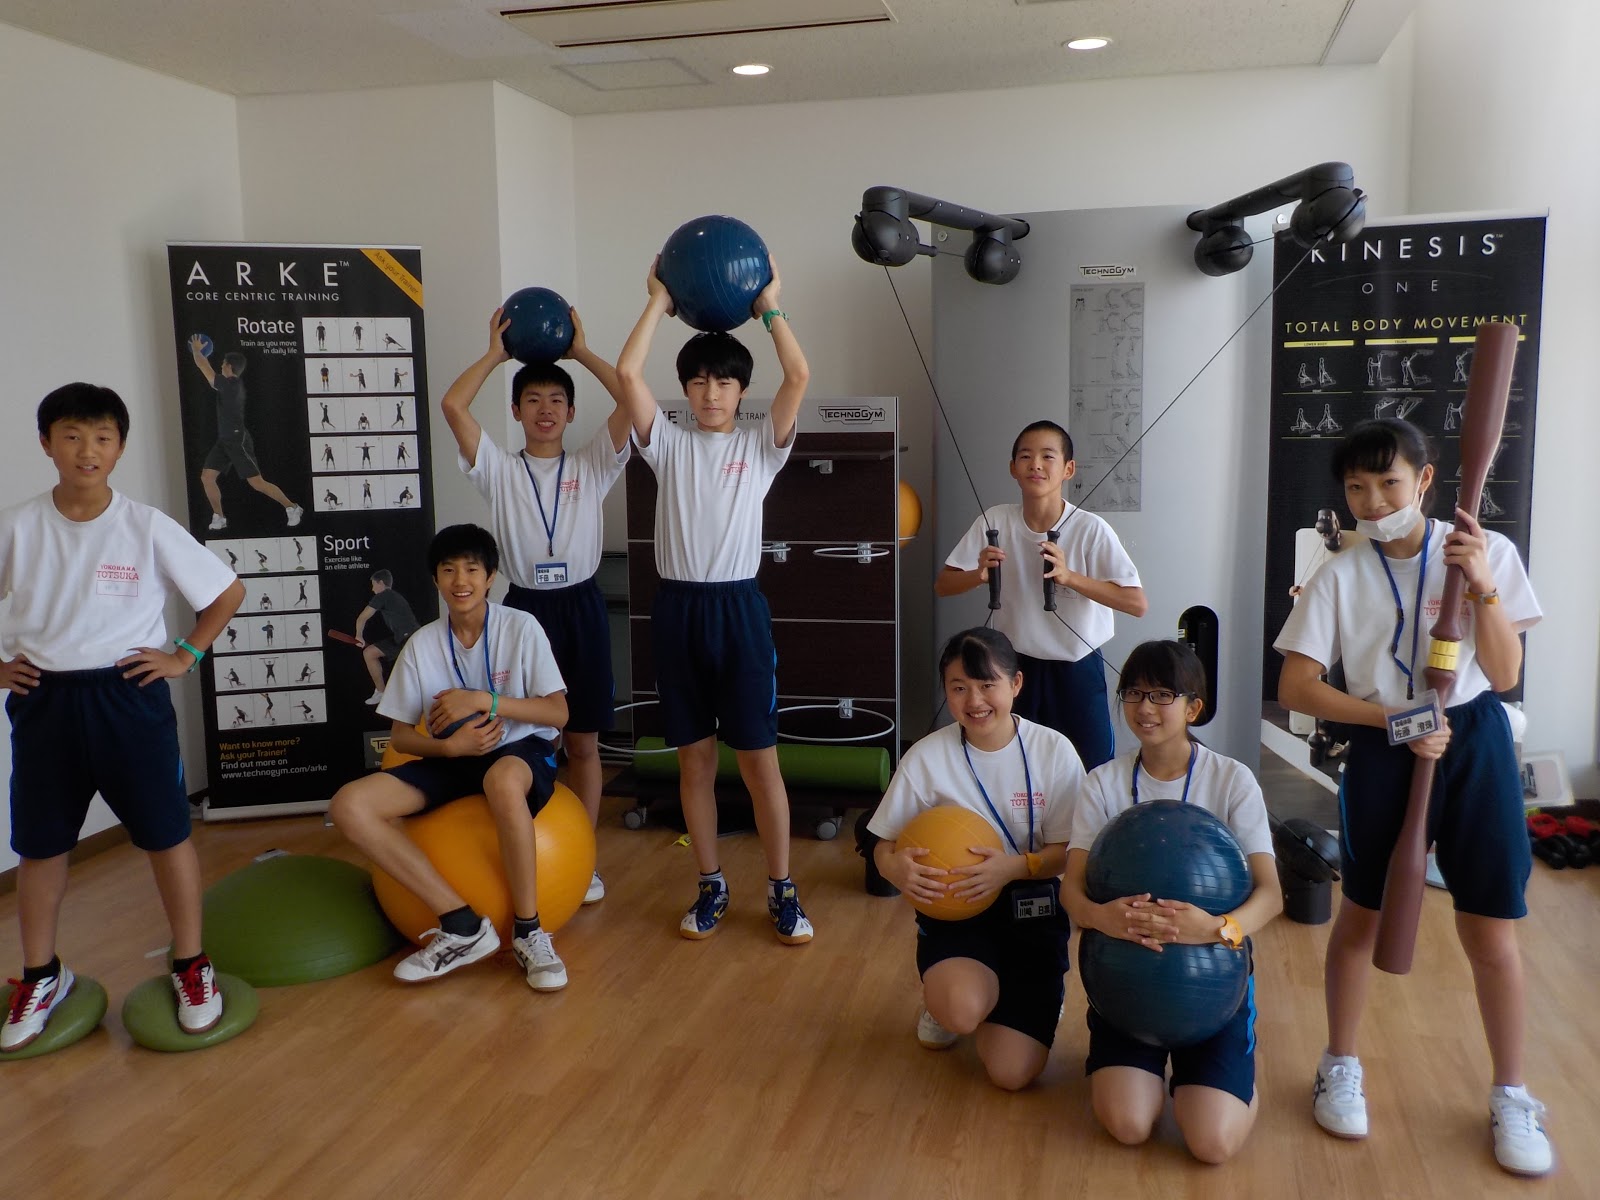 湘南とつかｙｍｃａｙｍｃａとつか学童クラブ 公式ブログ 湘南とつかymcaウエルネススポーツクラブ 中学生職場体験実施のご報告